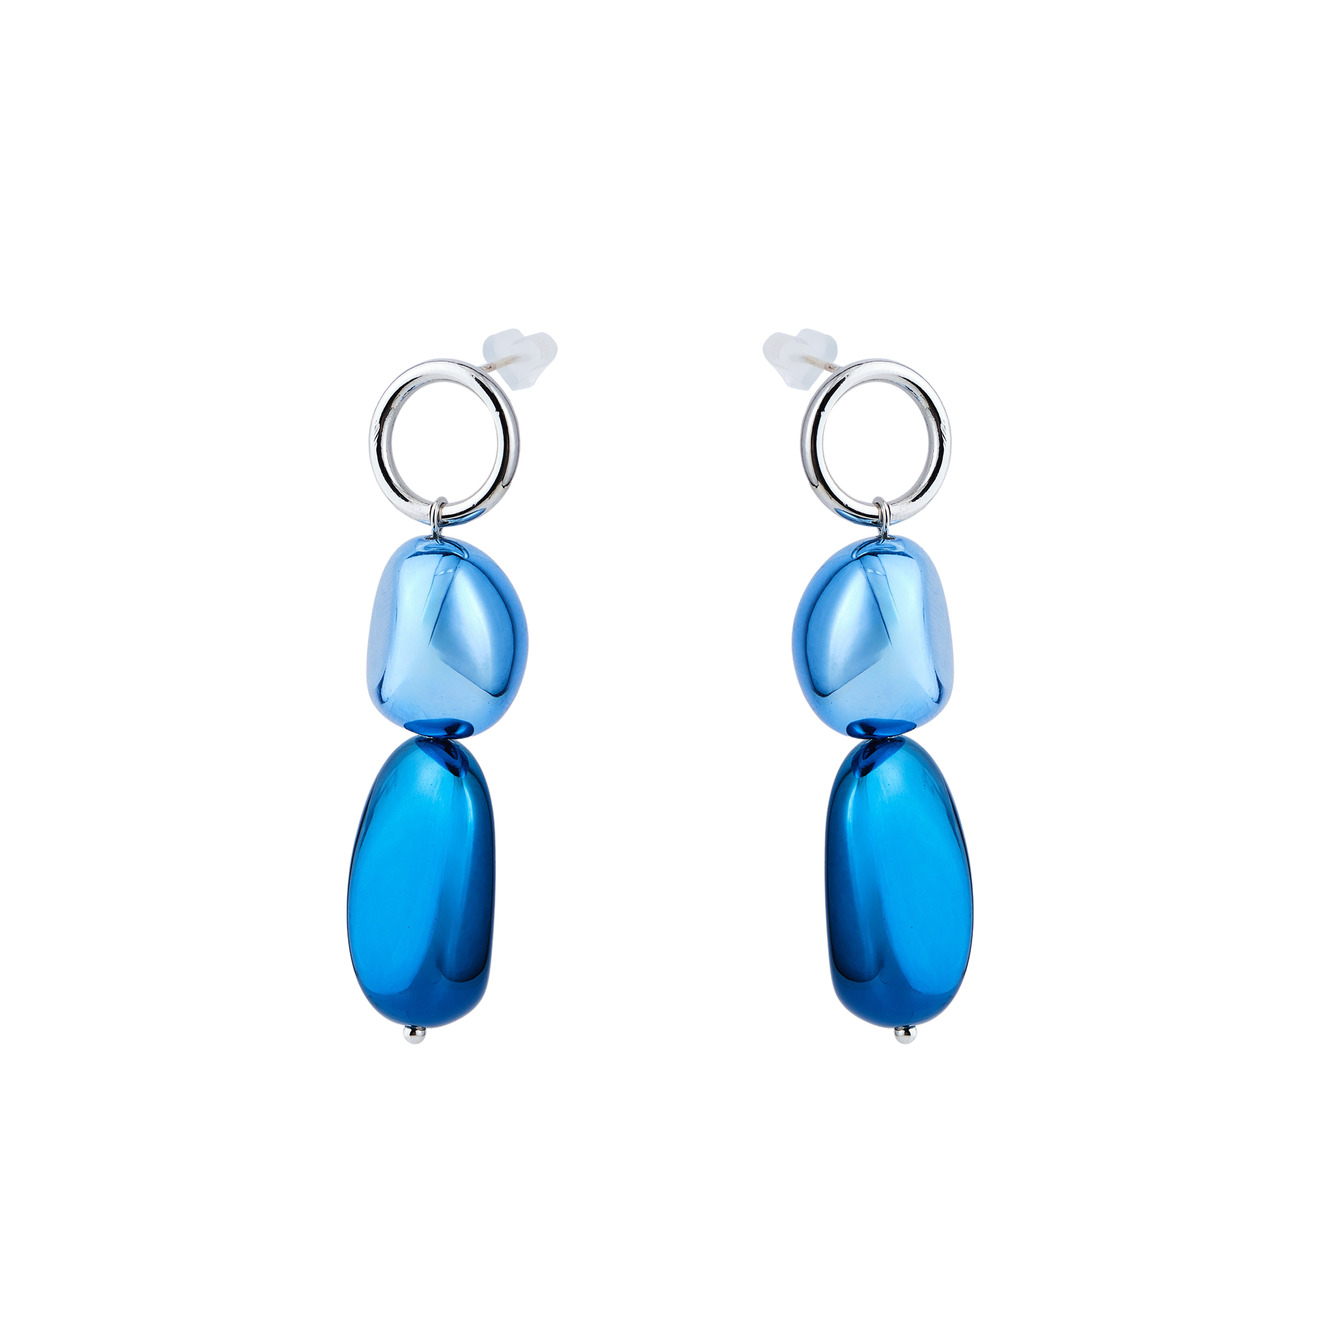 Free Form Jewelry Серебристые серьги с синим камнем free form jewelry серебристые серьги с синим камнем